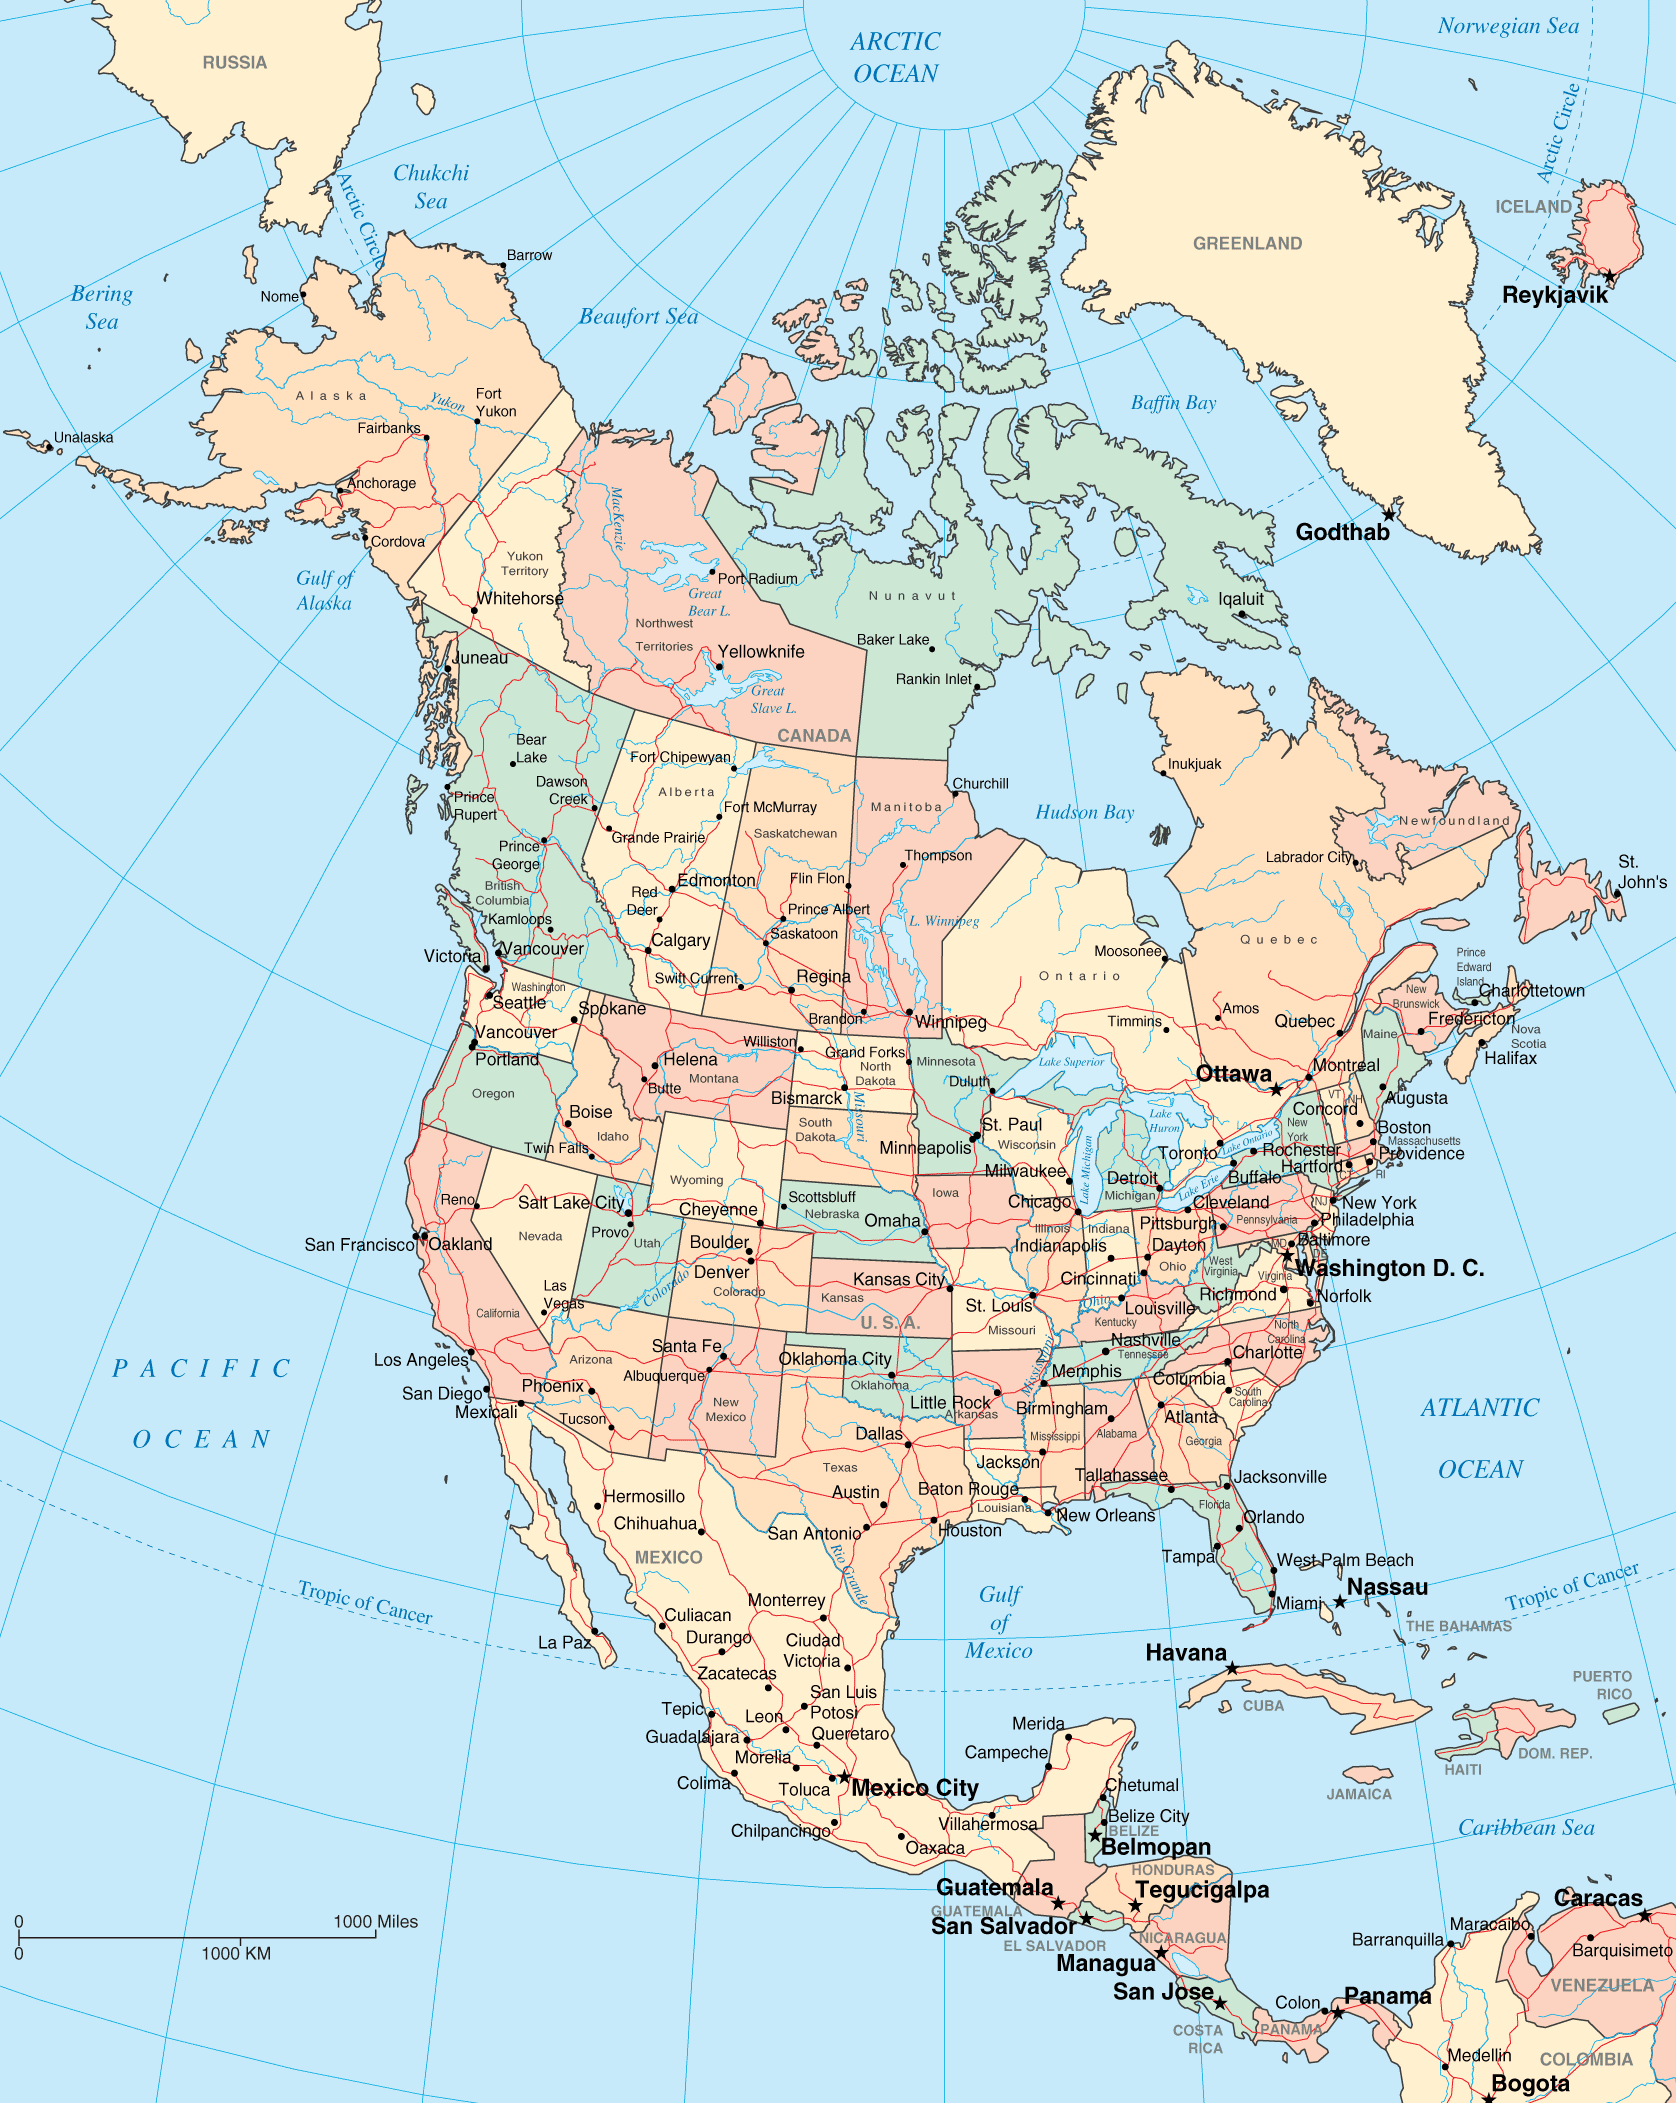 美国北卡州地图图片